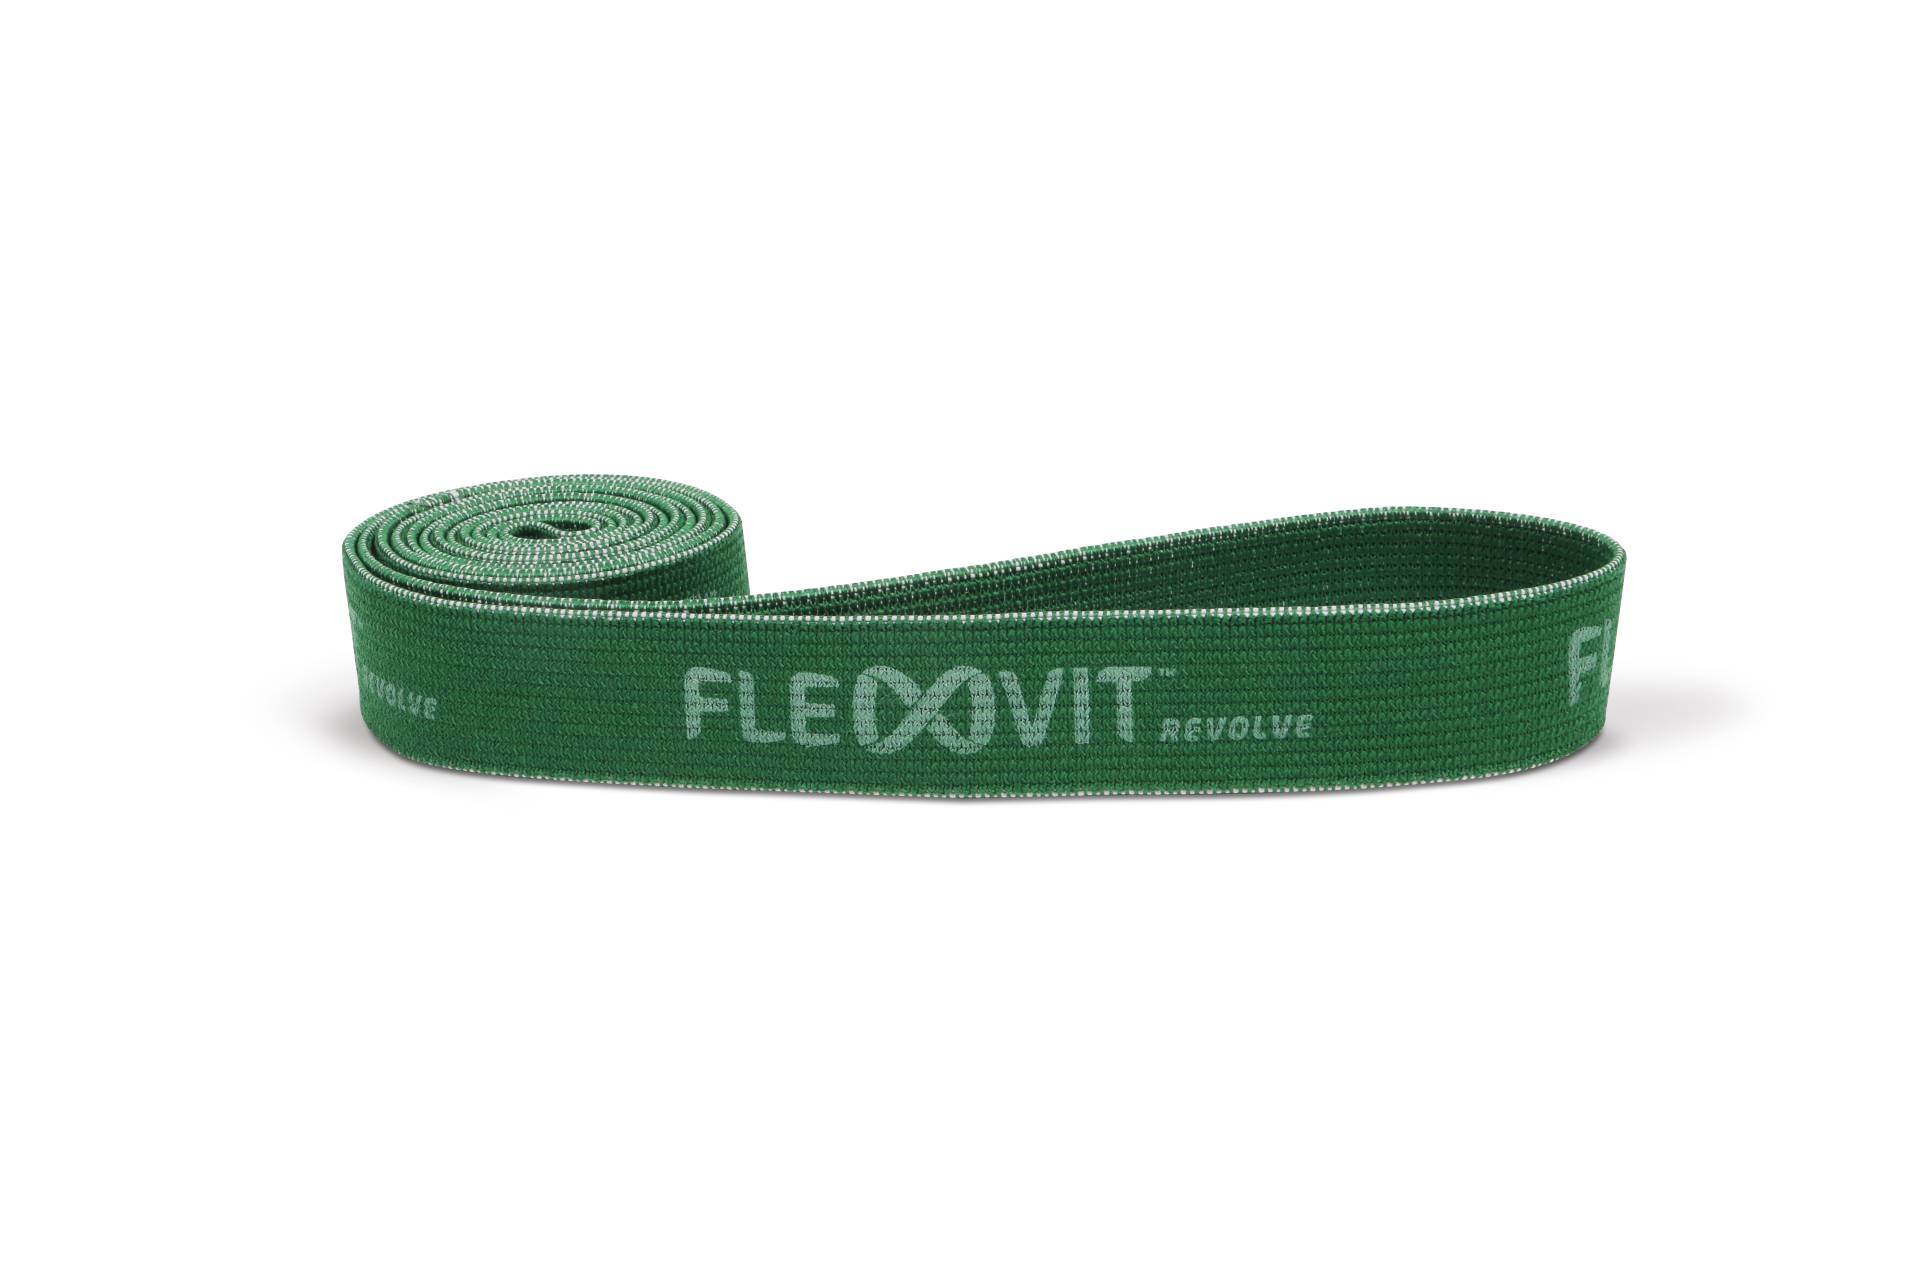 FLEXVIT Revolve Band - solid grün von Flexvit